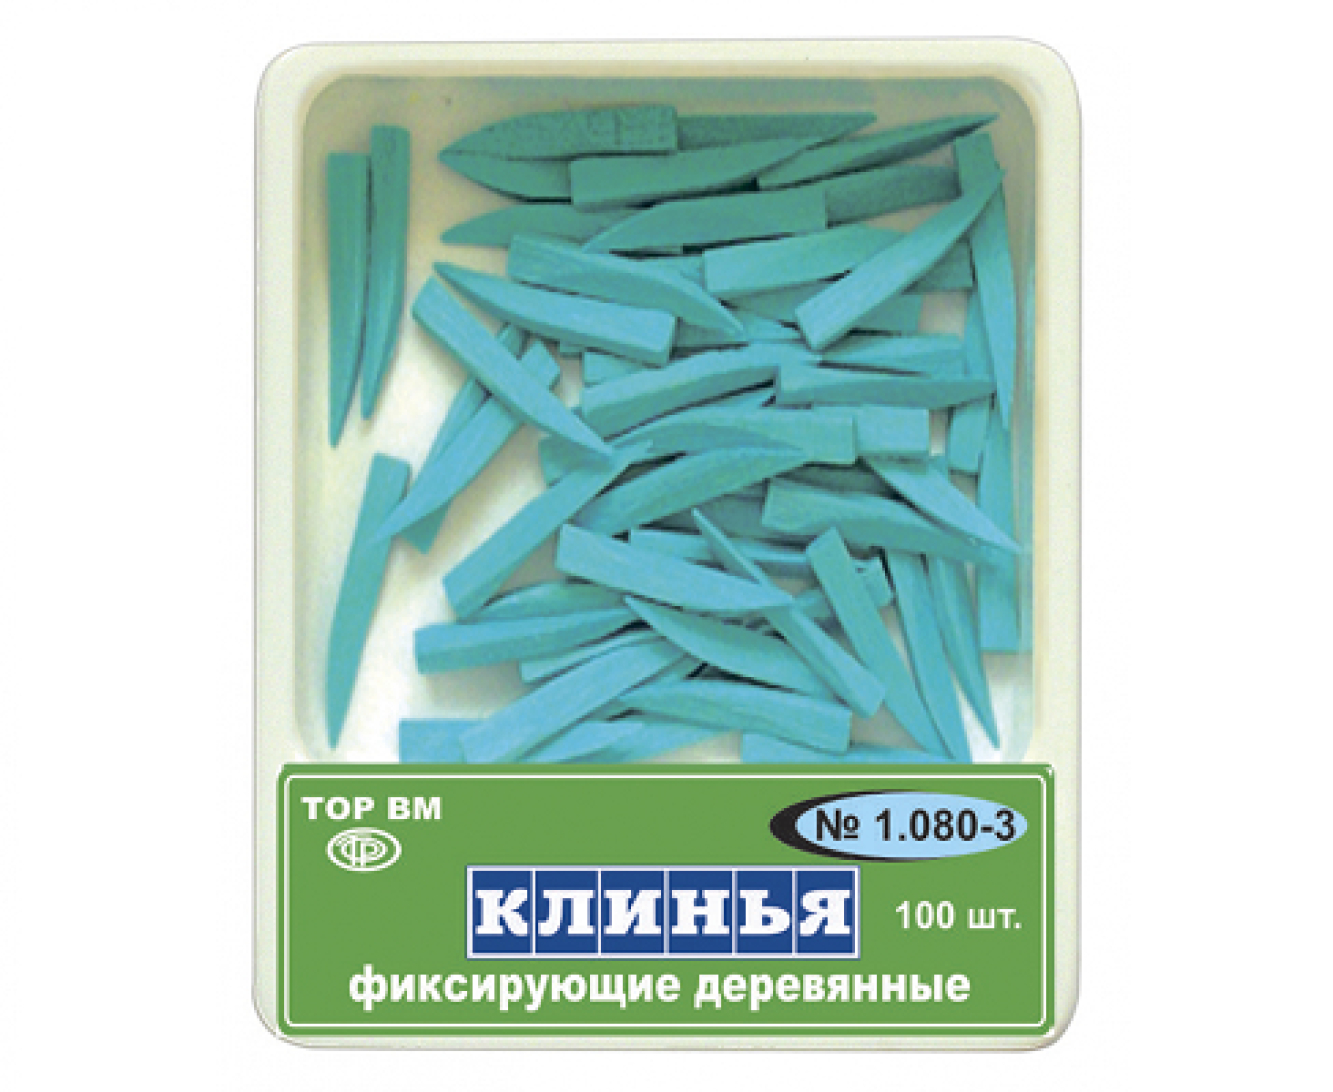 1.080-3 Клинья фиксирующие, деревянные, голубые, ТОР ВМ (Россия)